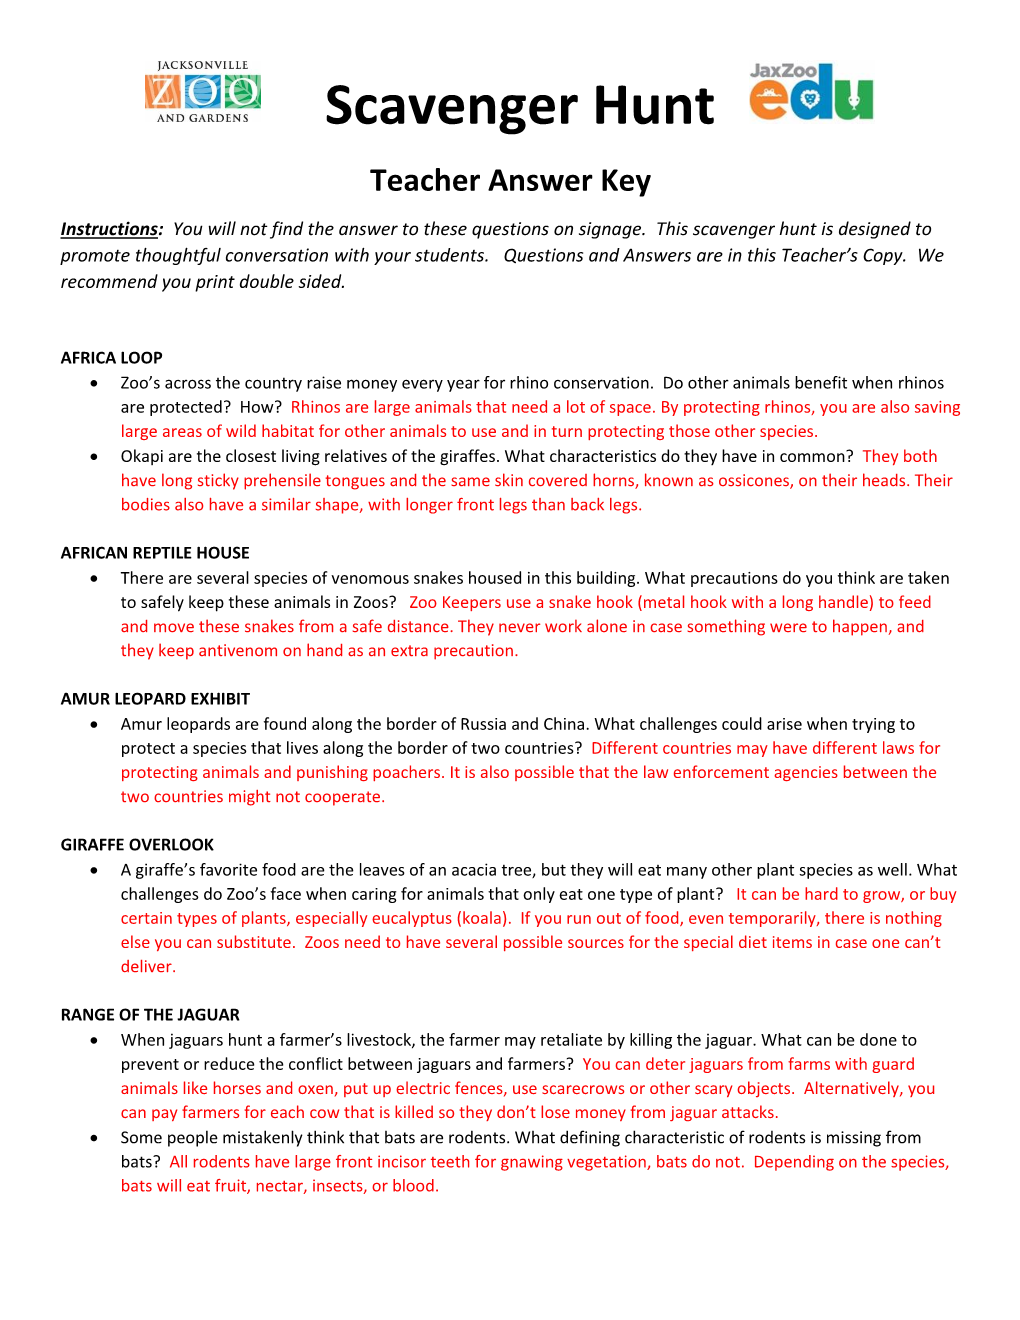 Scavenger Hunt Teacher Answer Key